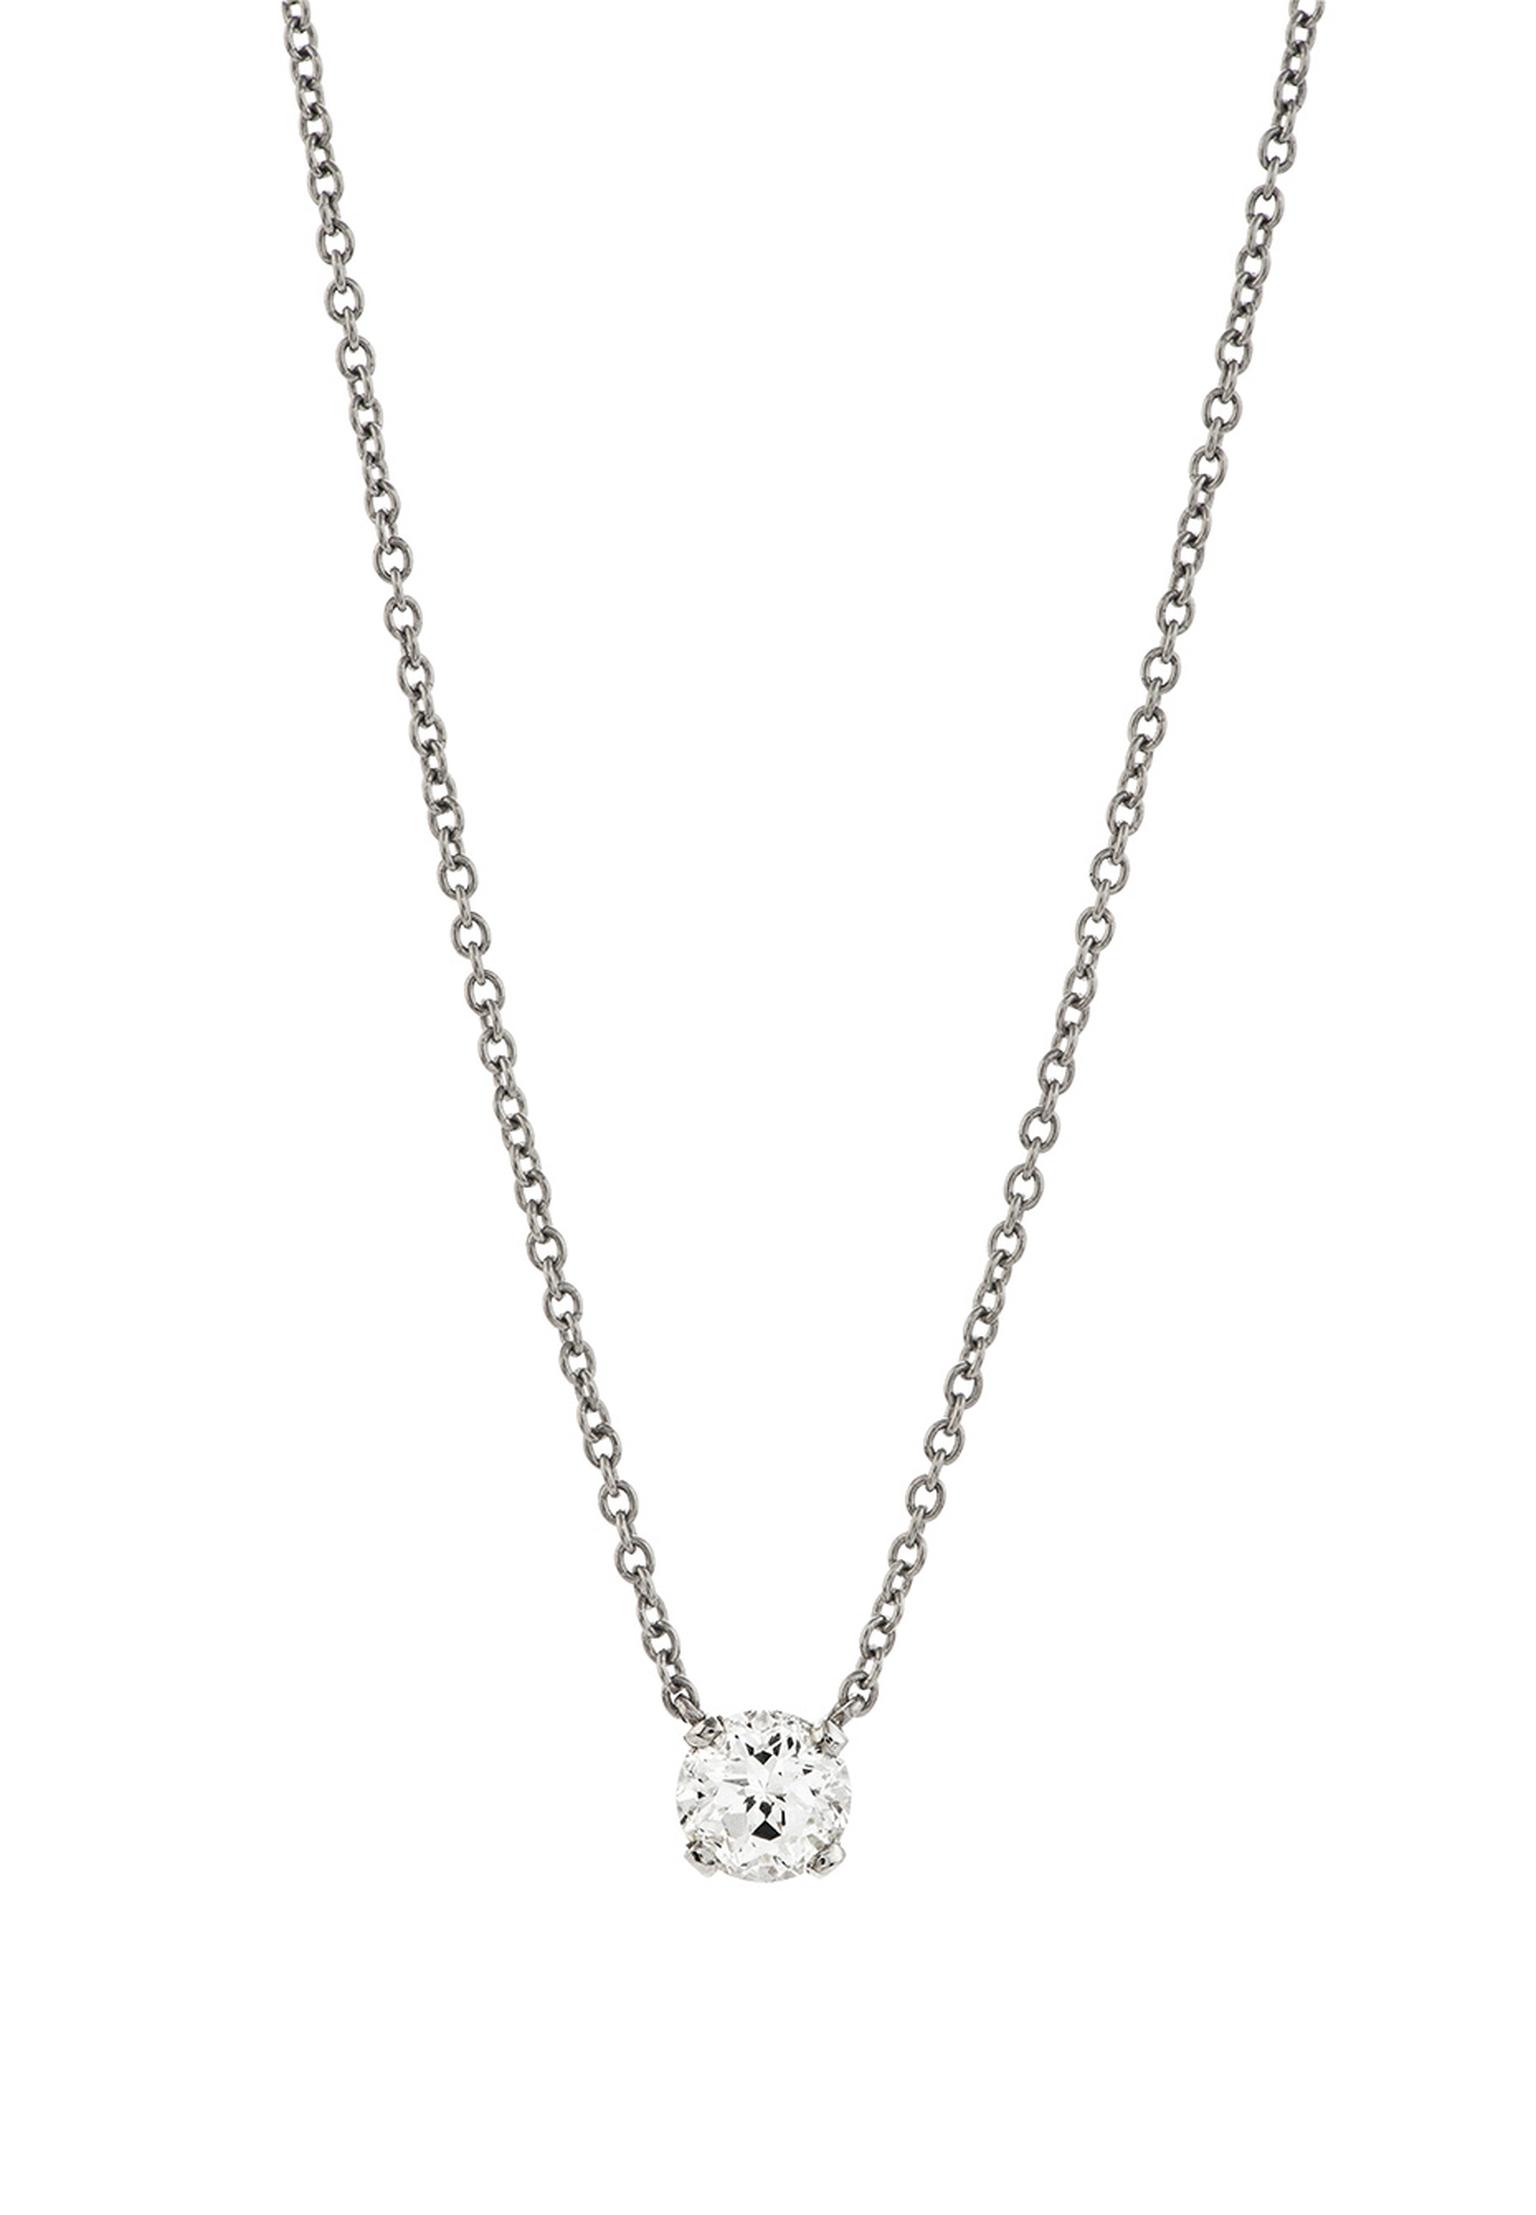 Garrard Eternal Cut solitaire diamond necklace